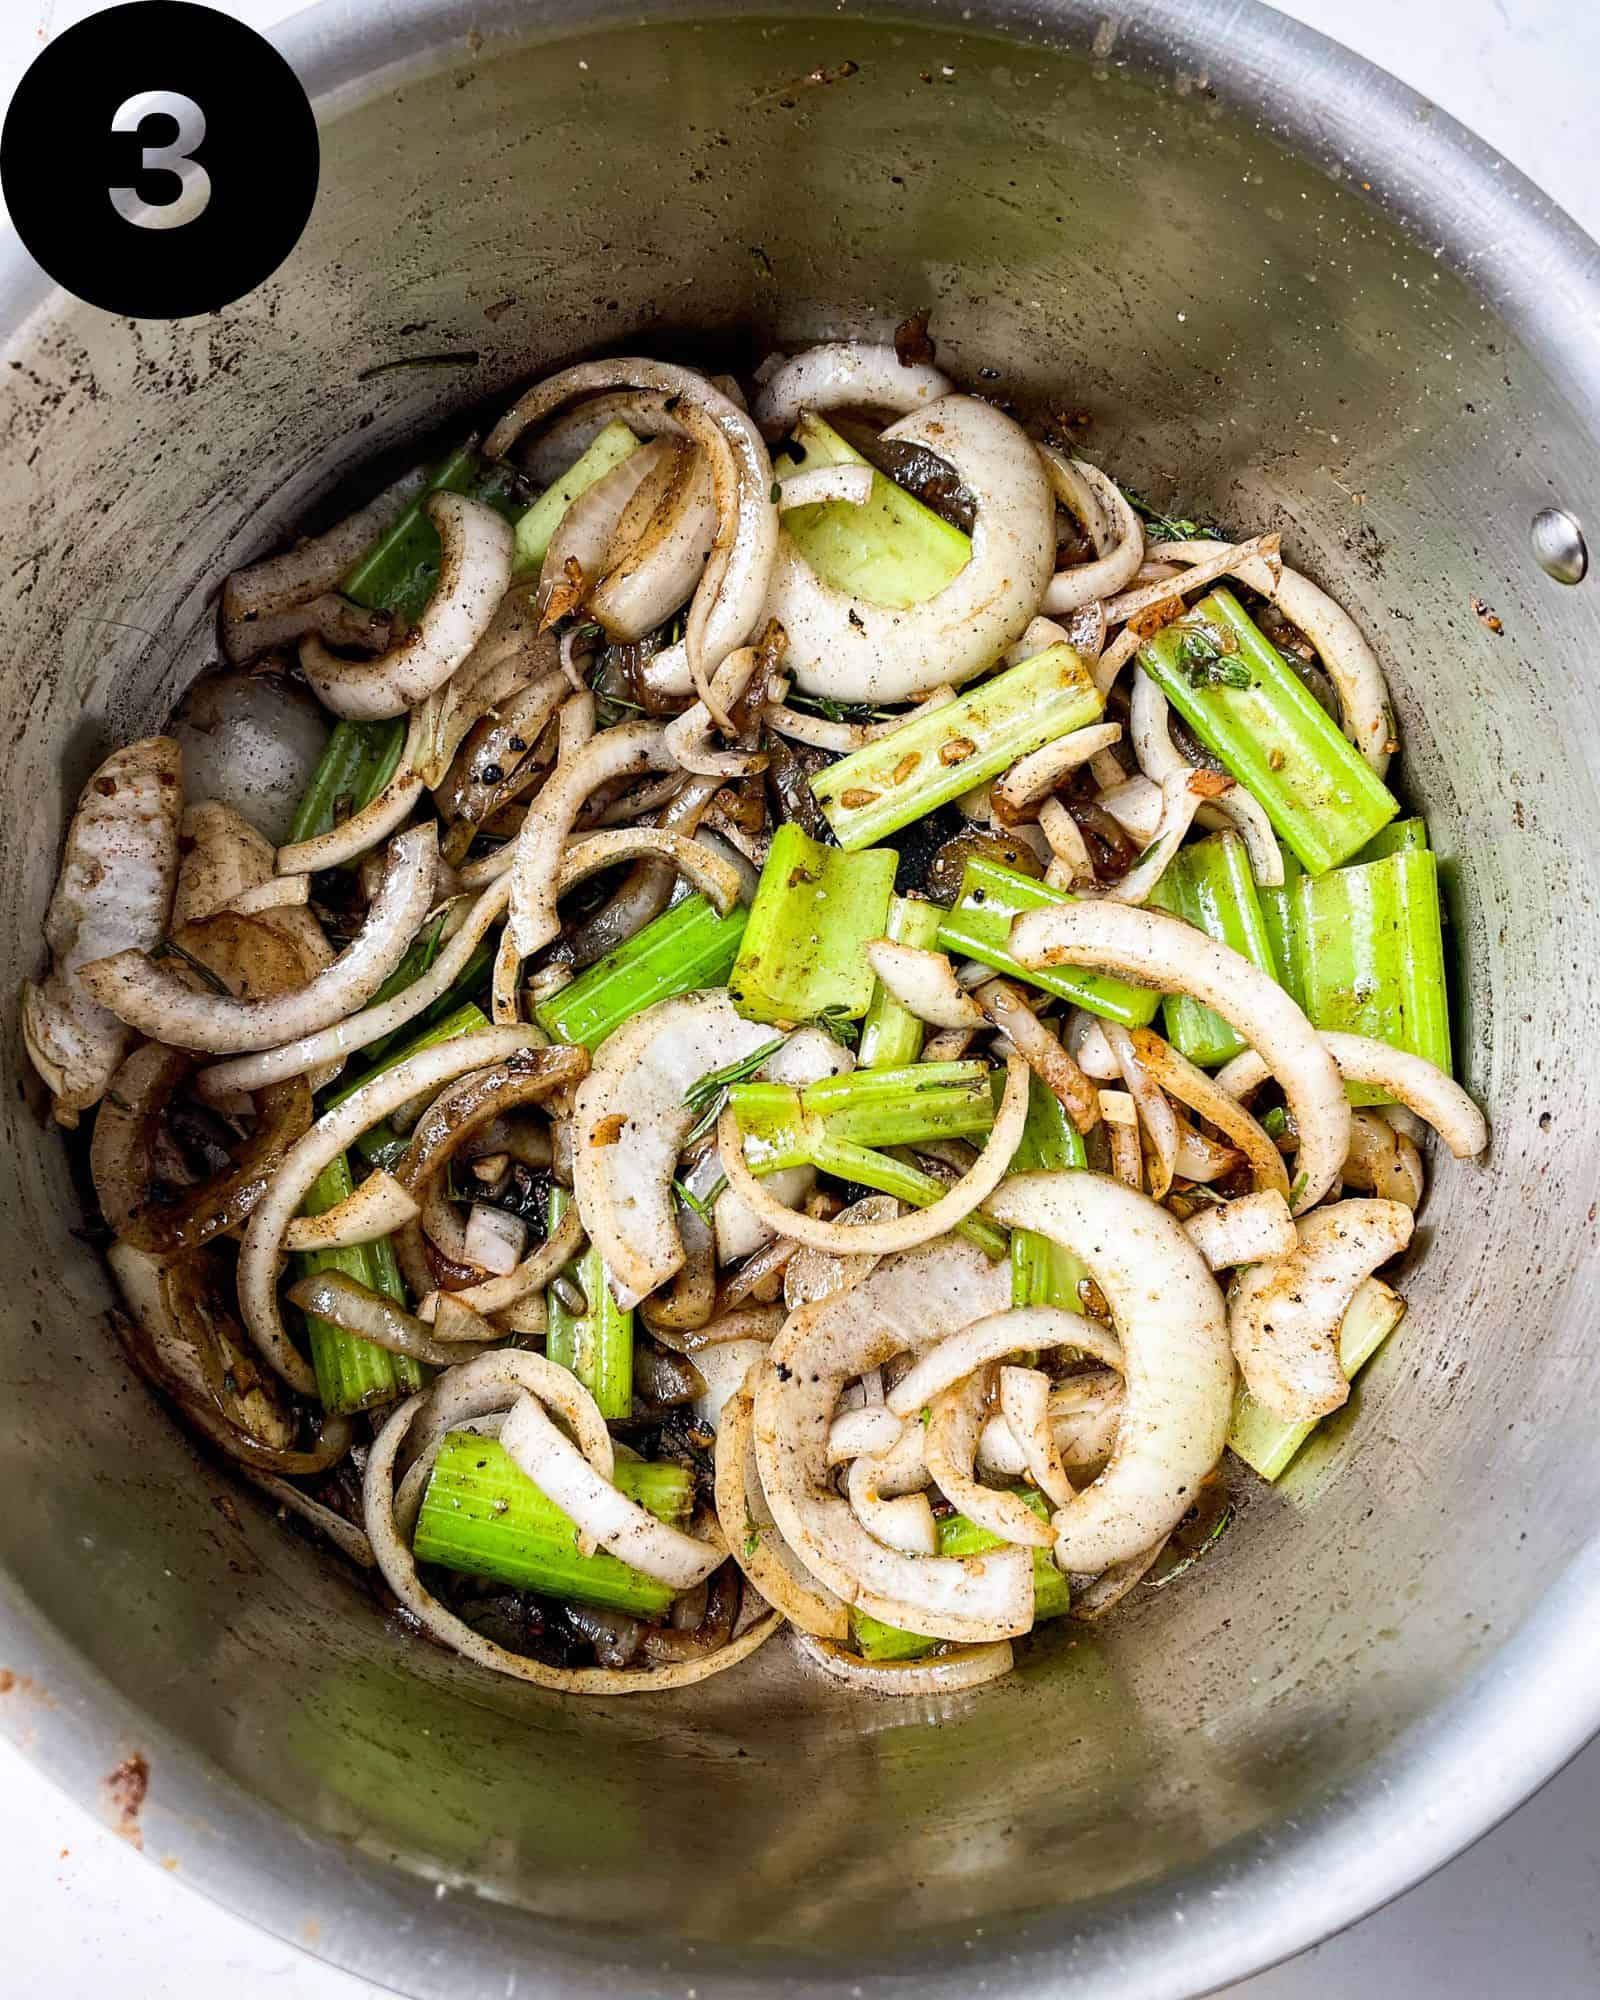 celery, onions, garlic, and seasonings in a pan.